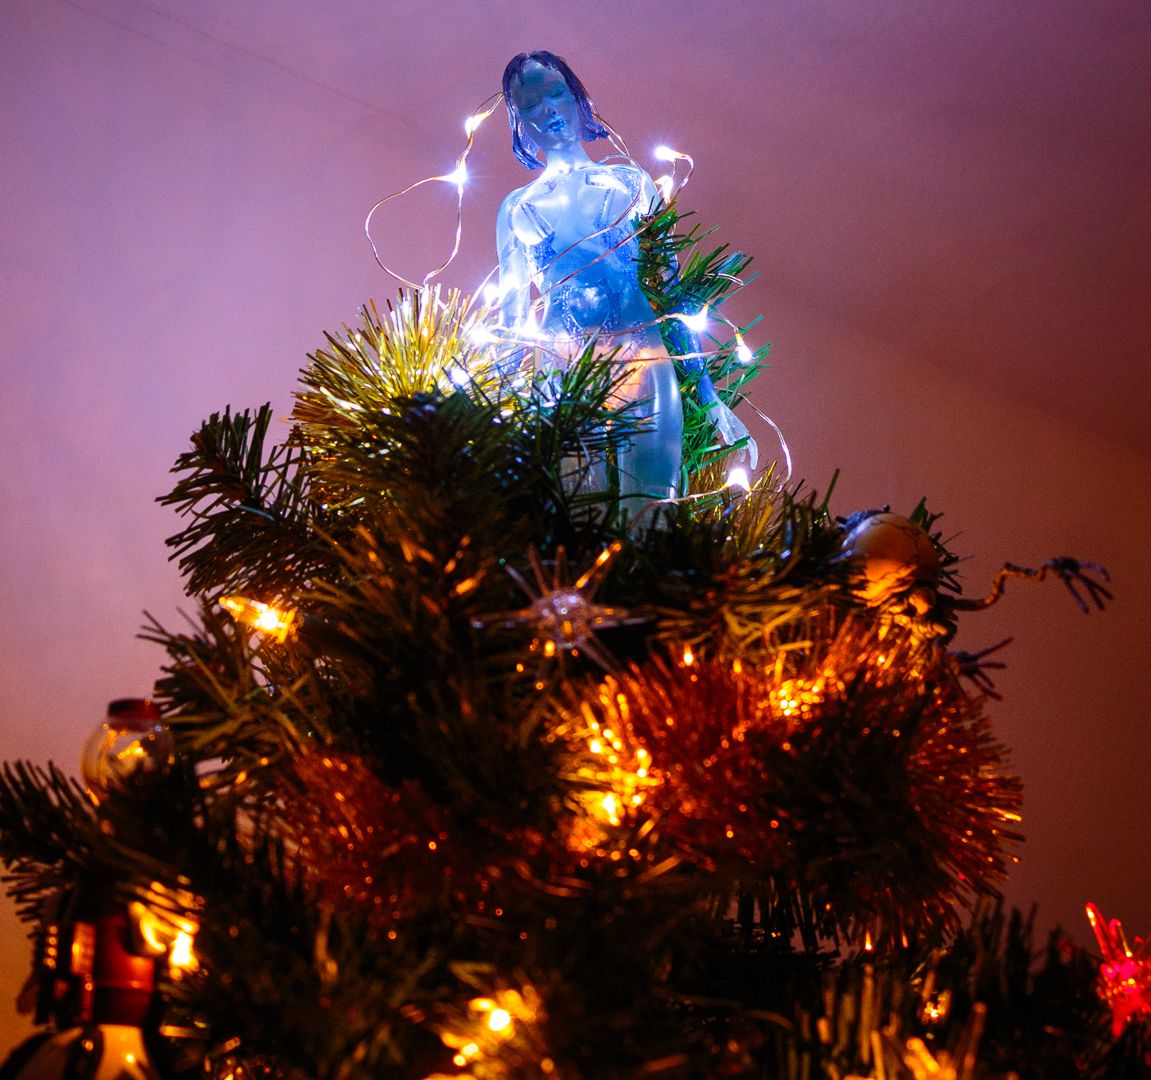 Cortana Christmas Tree photo 2013TreeXmas-35021_zpsb61d7987.jpg